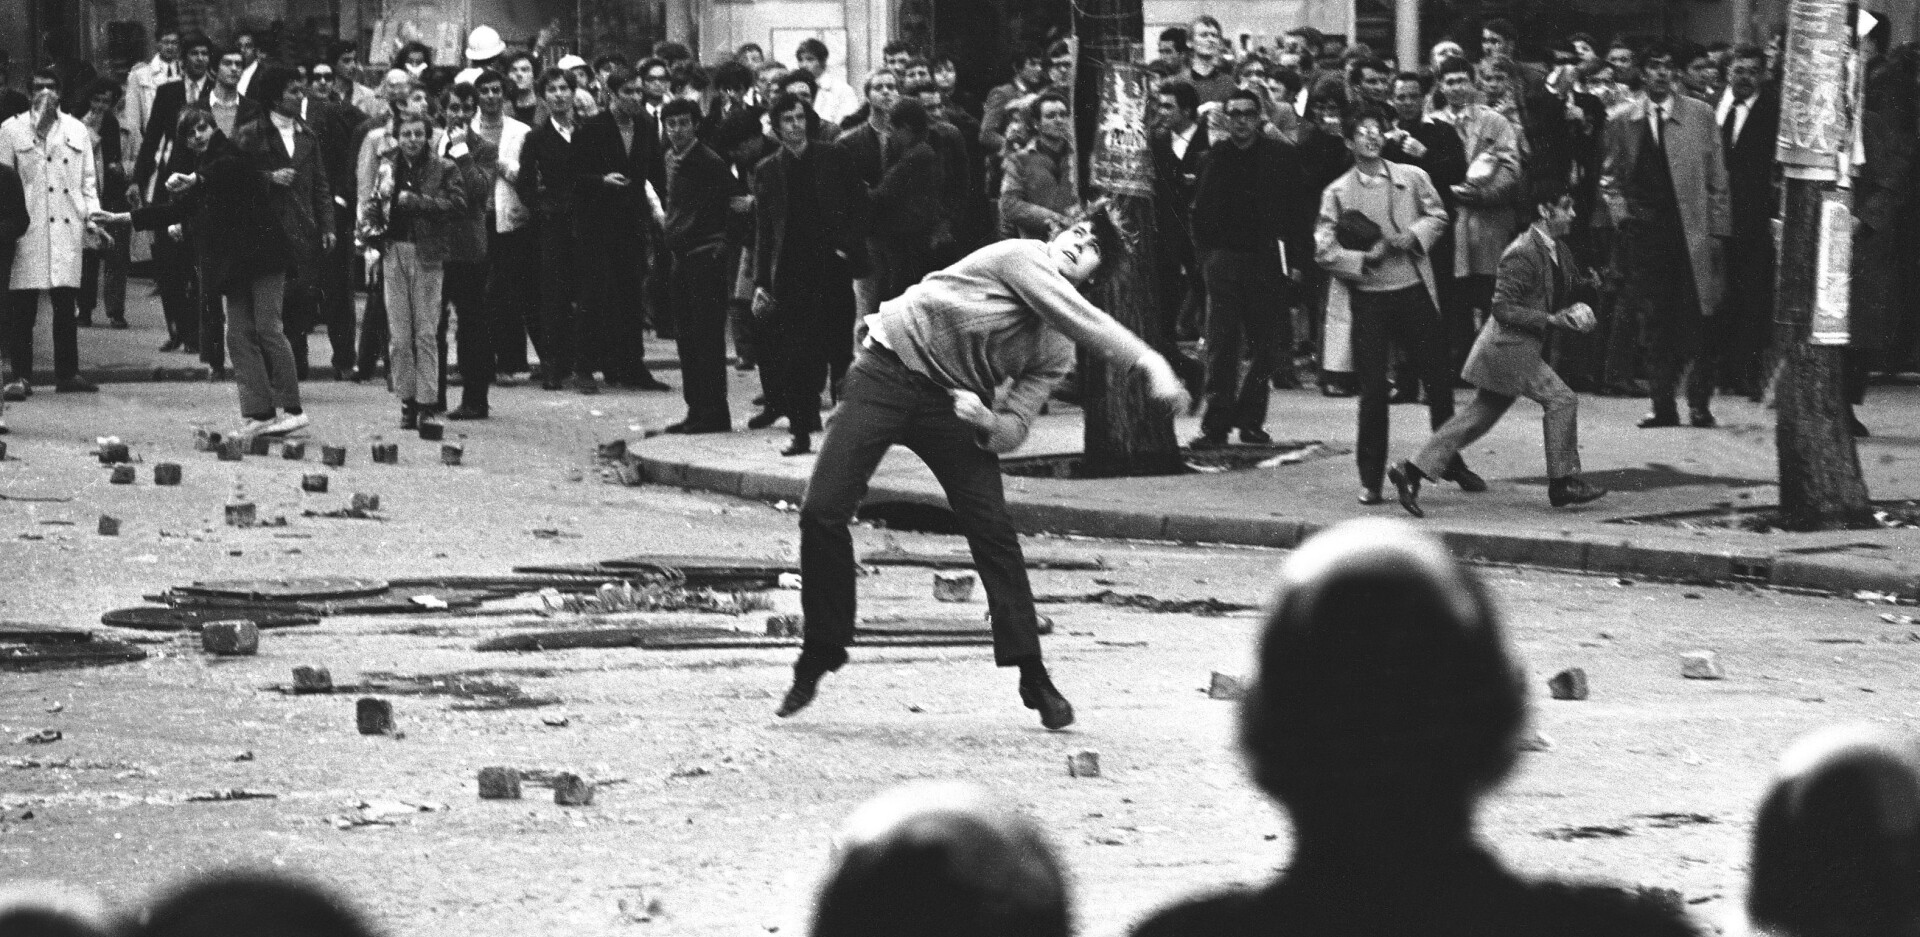 Σαν σήμερα: Ο γαλλικός Μάης του 1968 - Η «Νύχτα των Οδοφραγμάτων» - Μεγάλες διαδηλώσεις και συγκρούσεις με την αστυνομία στο Παρίσι.